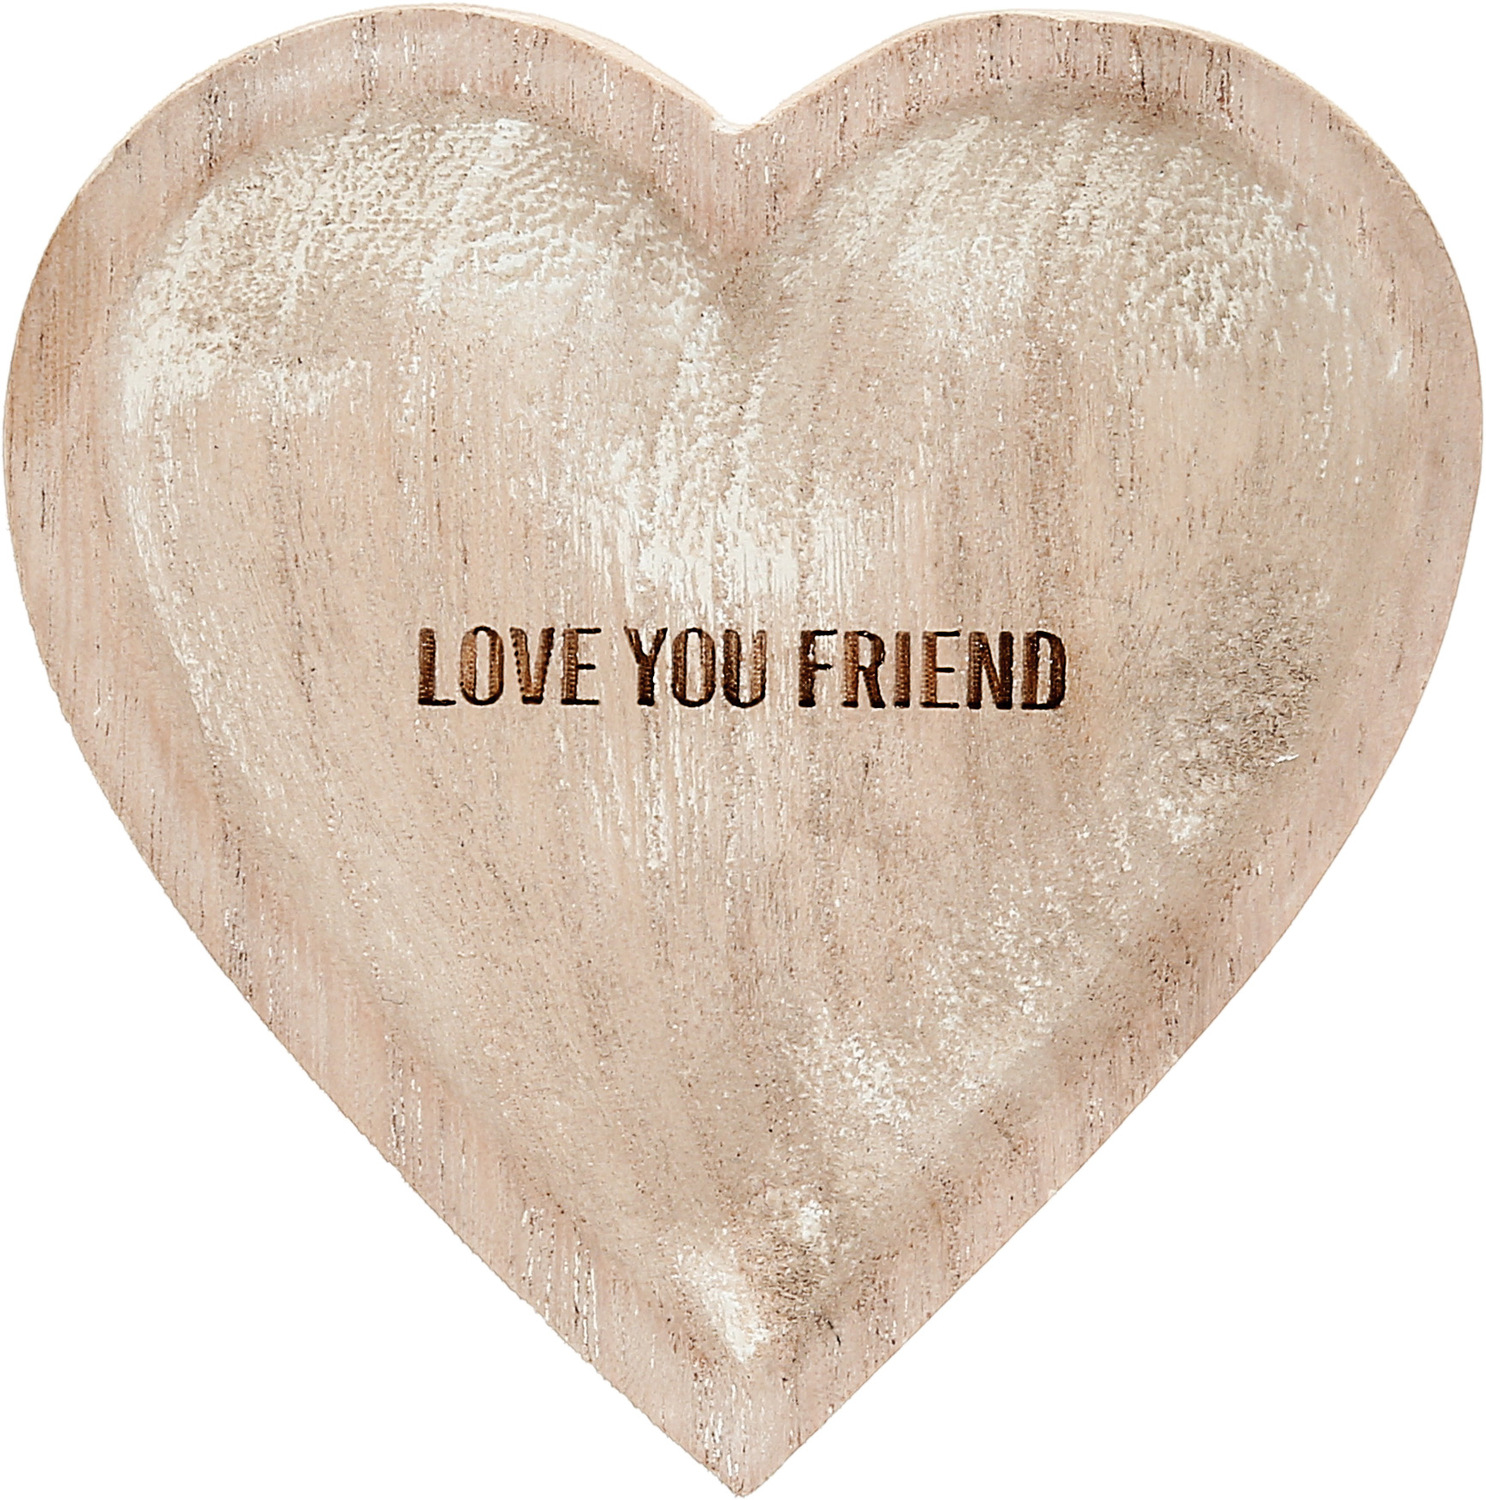 Love You Friend by Love You - Love You Friend - 4" Wood Keepsake Dish